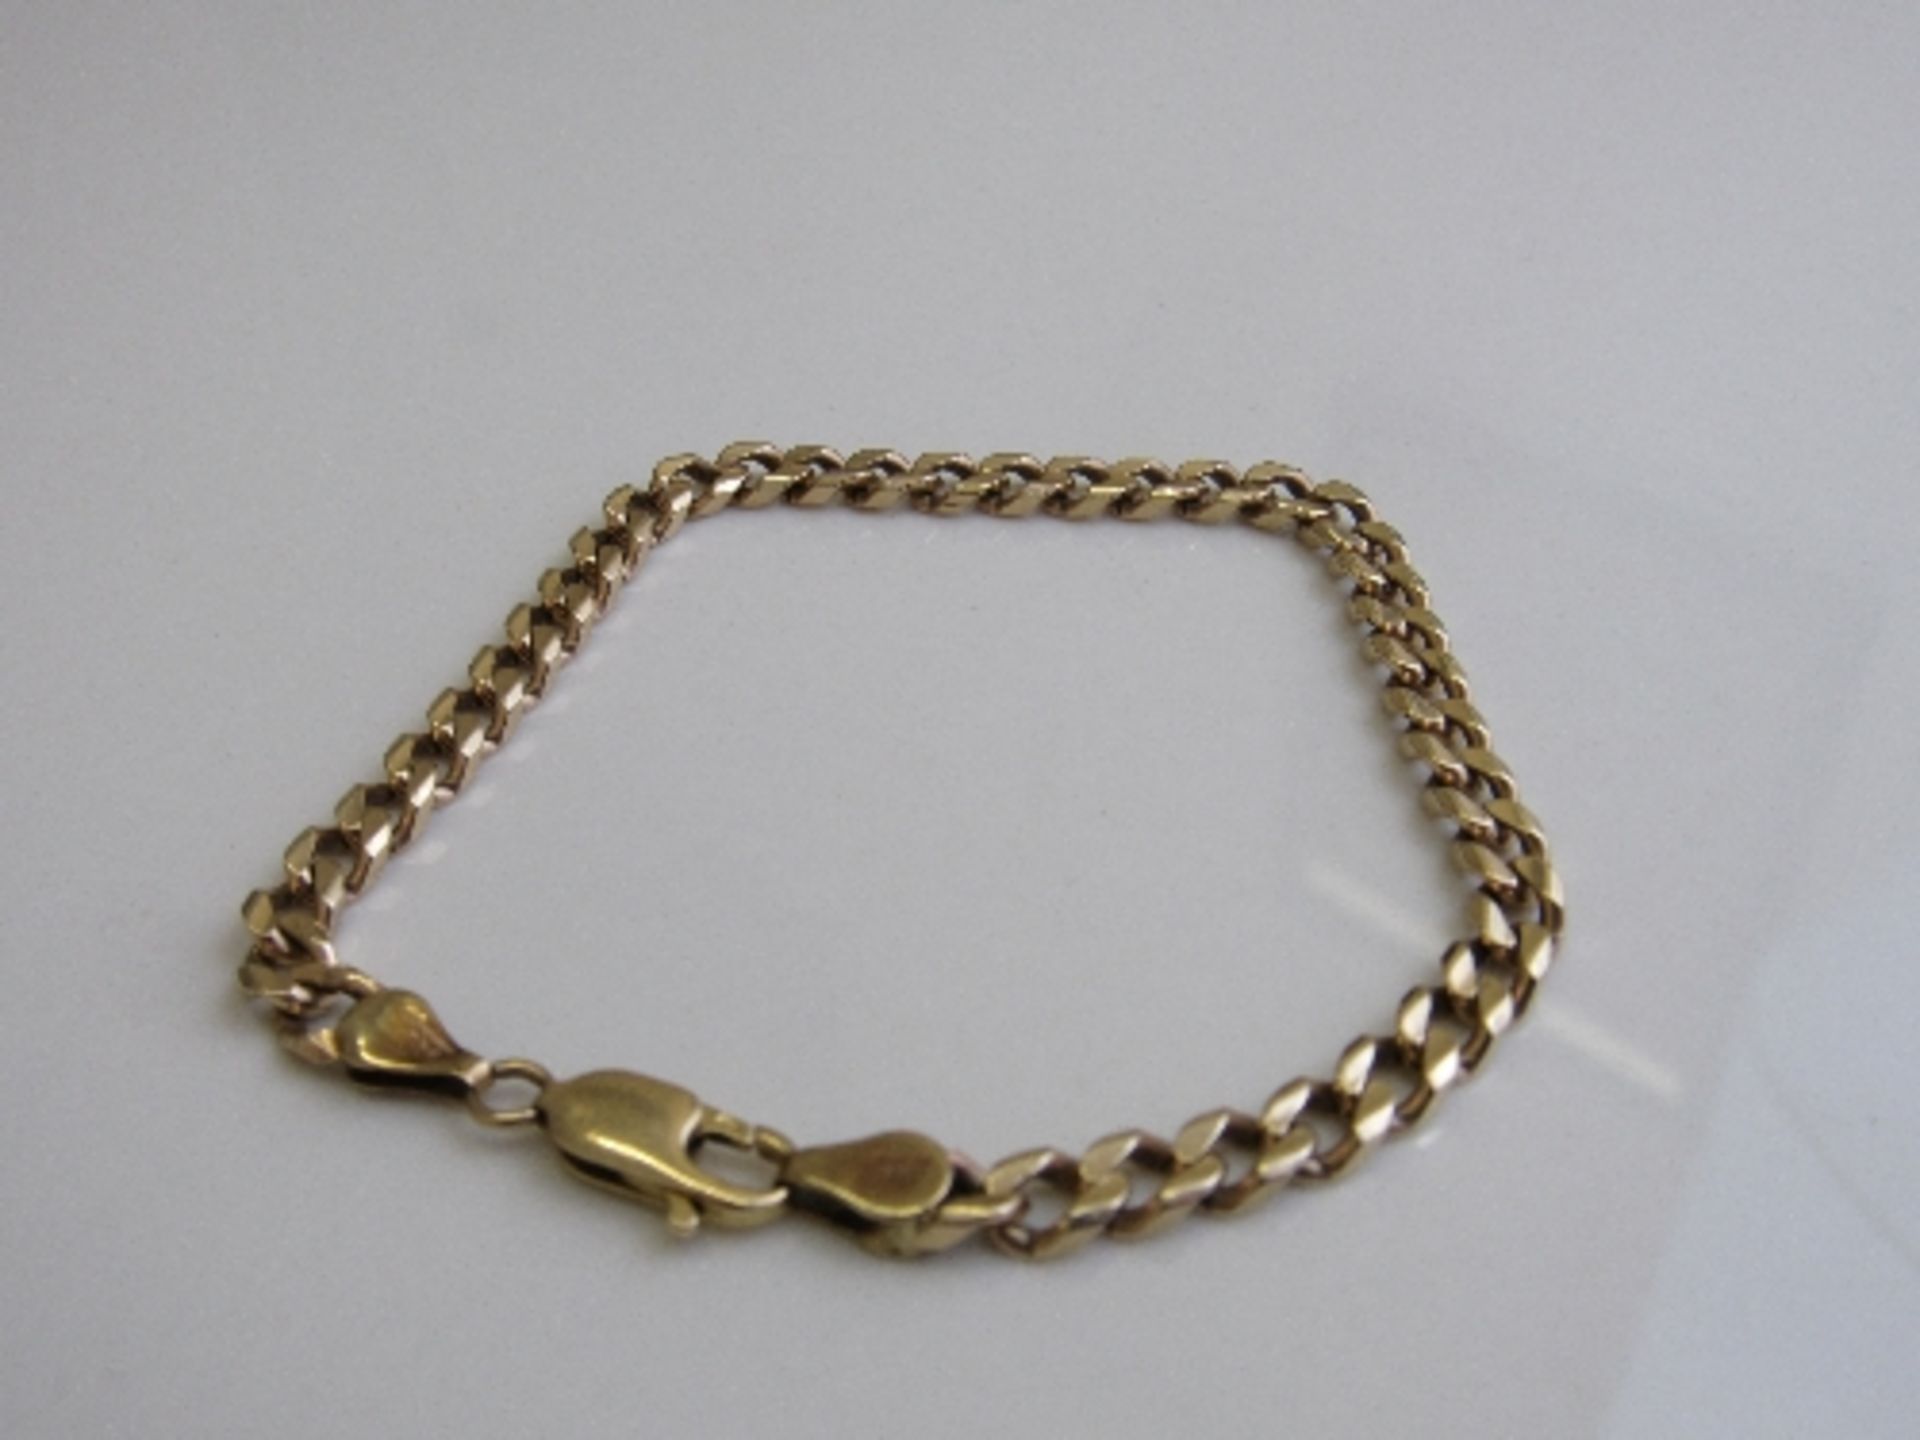 9ct gold link bracelet, weight 11.8gms, length 20cms. Estimate £130-150